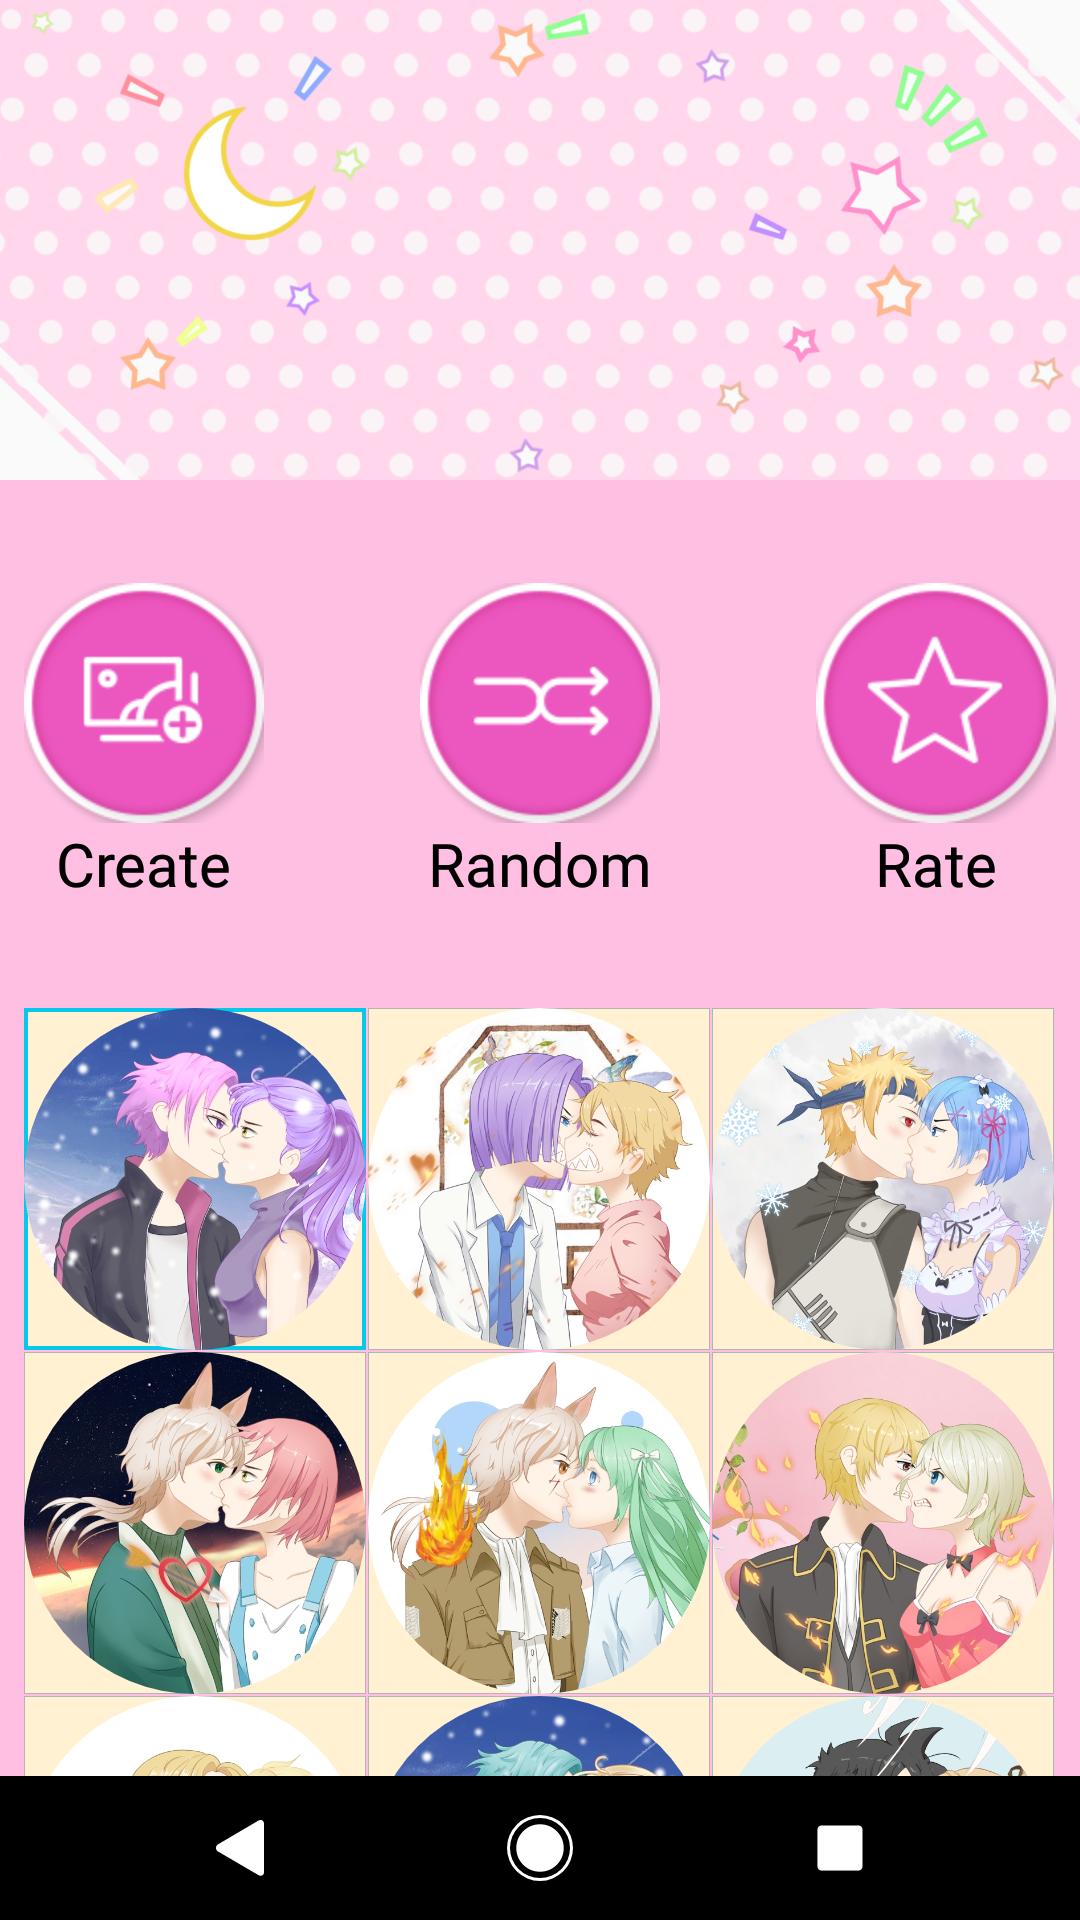 Ứng dụng tạo avatar đôi cho Android 5 người: Có một số ứng dụng tạo avatar đôi cho Android 5 người rất tuyệt vời và giúp người dùng tạo ra những hình ảnh độc đáo. Bạn có thể thể hiện cá tính của mình với các tùy chọn đa dạng và tạo ra một bức ảnh đội nhóm hoàn hảo.